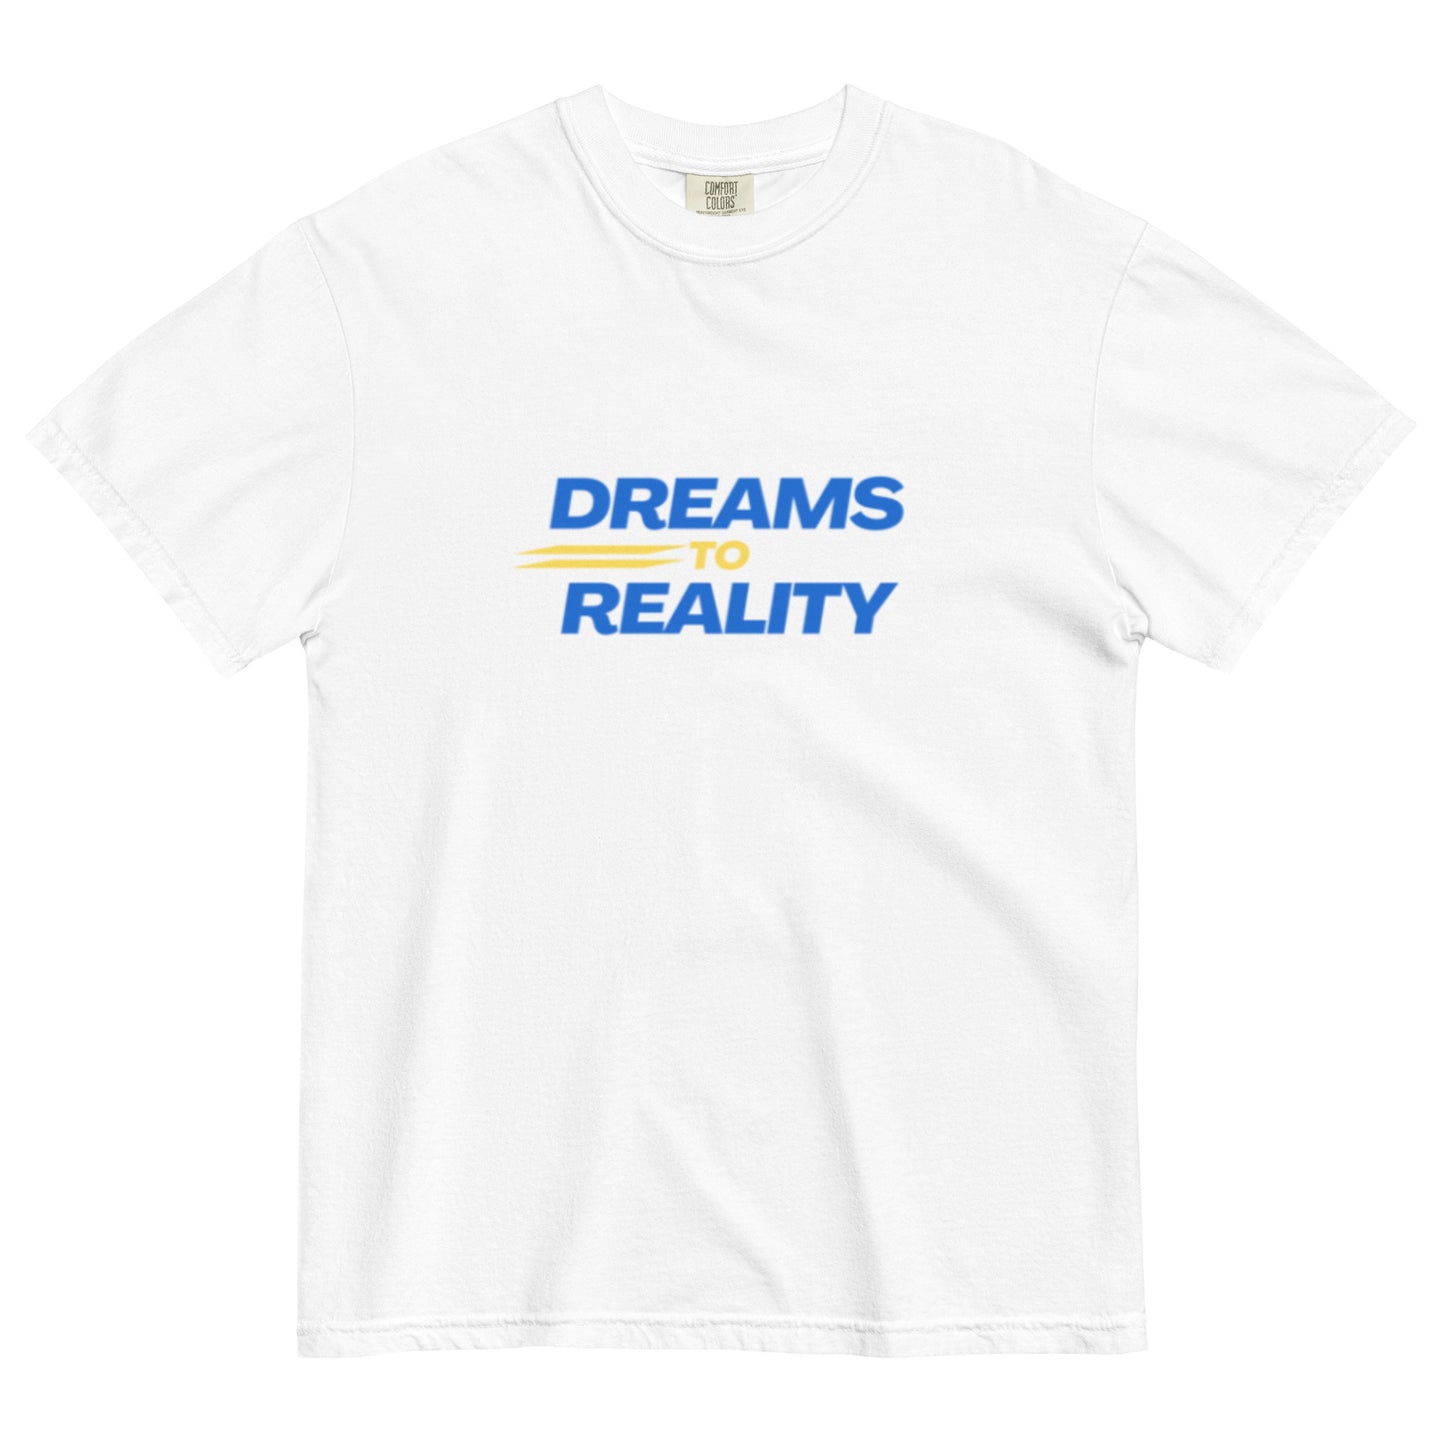 AMG BIG "DREAMS TO REALITY" TEE